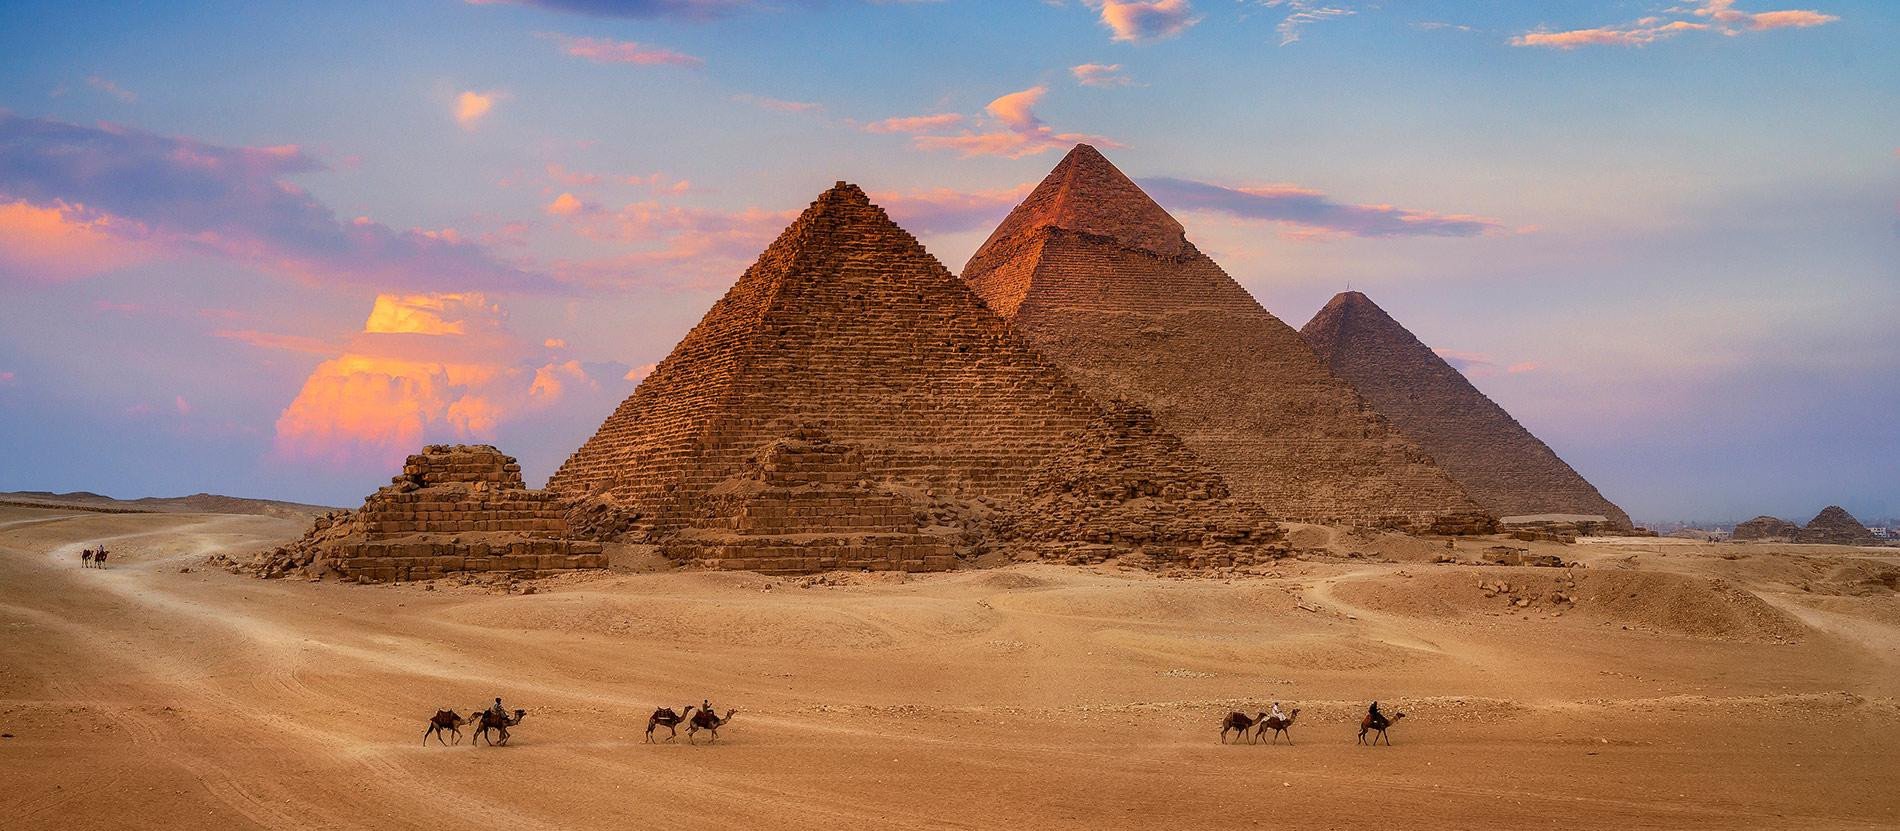 pyramid-of-giza.jpeg